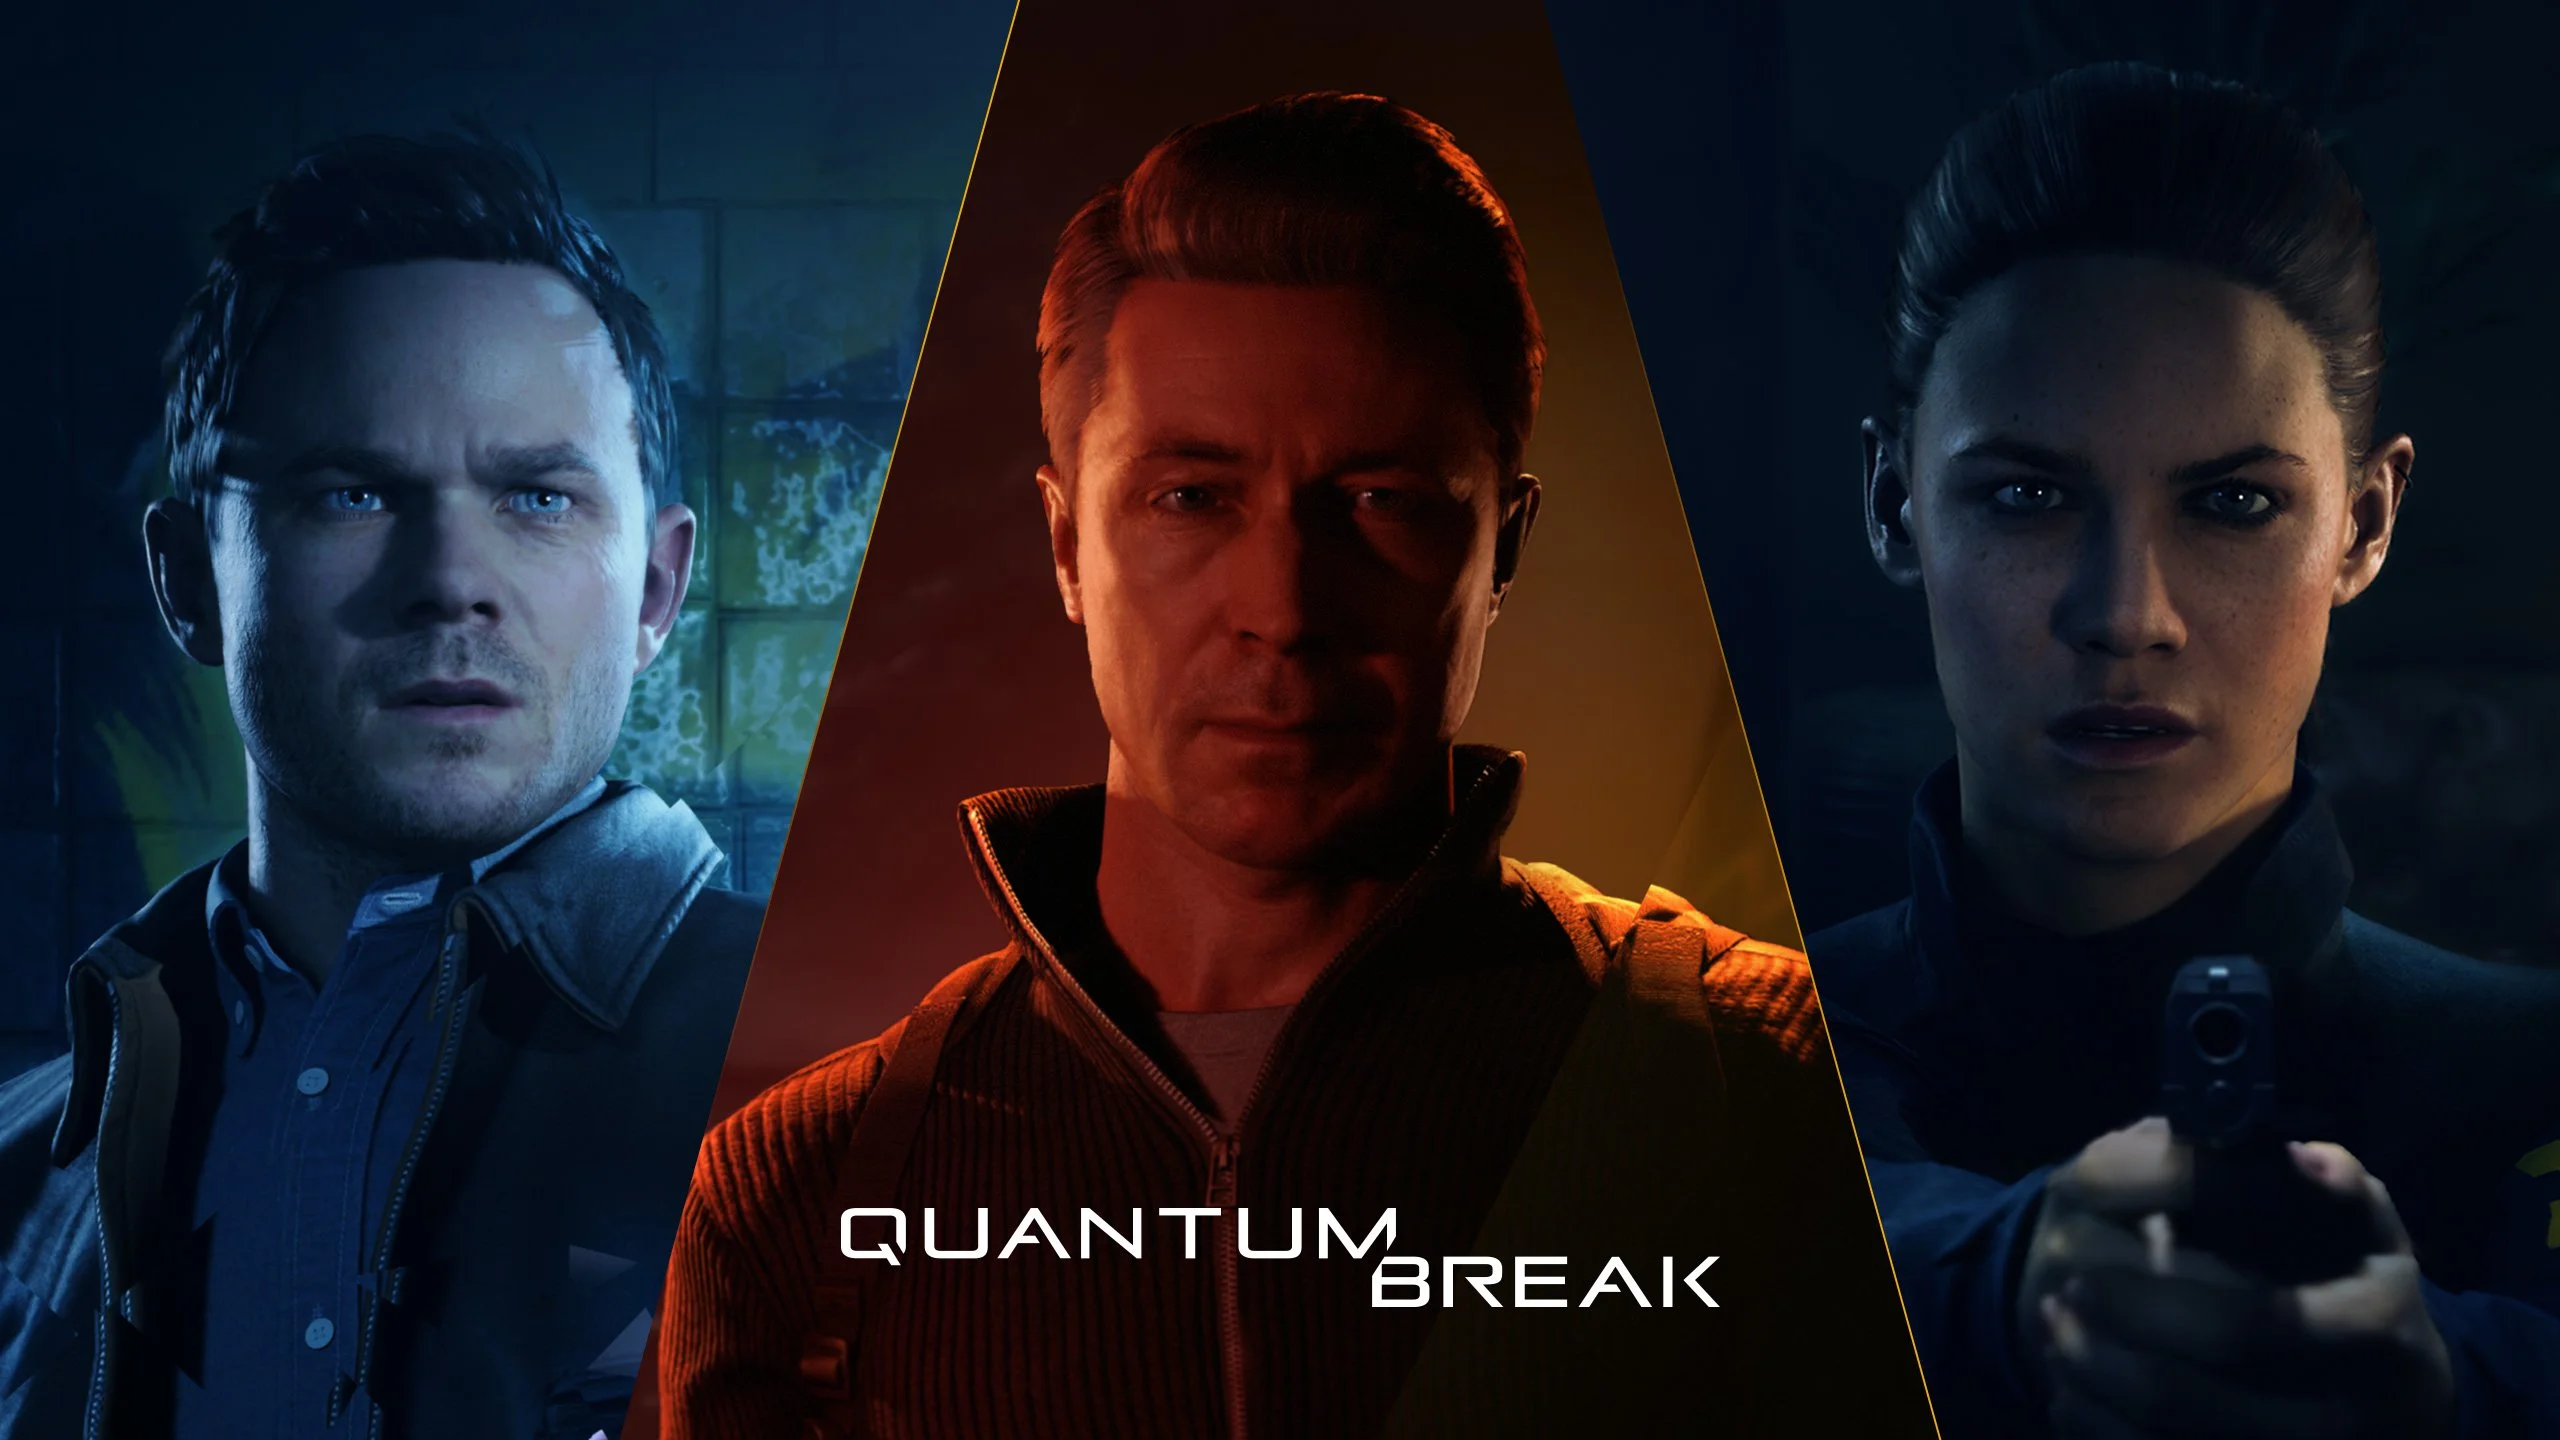 Сегодня, 5 апреля, на Windows 10 и Xbox выходит Quantum Break, шутер от третьего лица, позволяющий управлять временем. Рецензию Паши Пивоварова на саму игру вы уже читали, но мне как кинокритику было интересно взглянуть на сюжет игры отдельно, особенно учитывая, что Remedy сделала на него такую ставку и даже включили в игру 4 эпизода собственного сериала с живыми актерами. Хотелось оценить эффективность такого композитного метода как такового (именитые актеры тут представлены как вживую – в сериале – так и в оцифрованной версии – в самой игре).